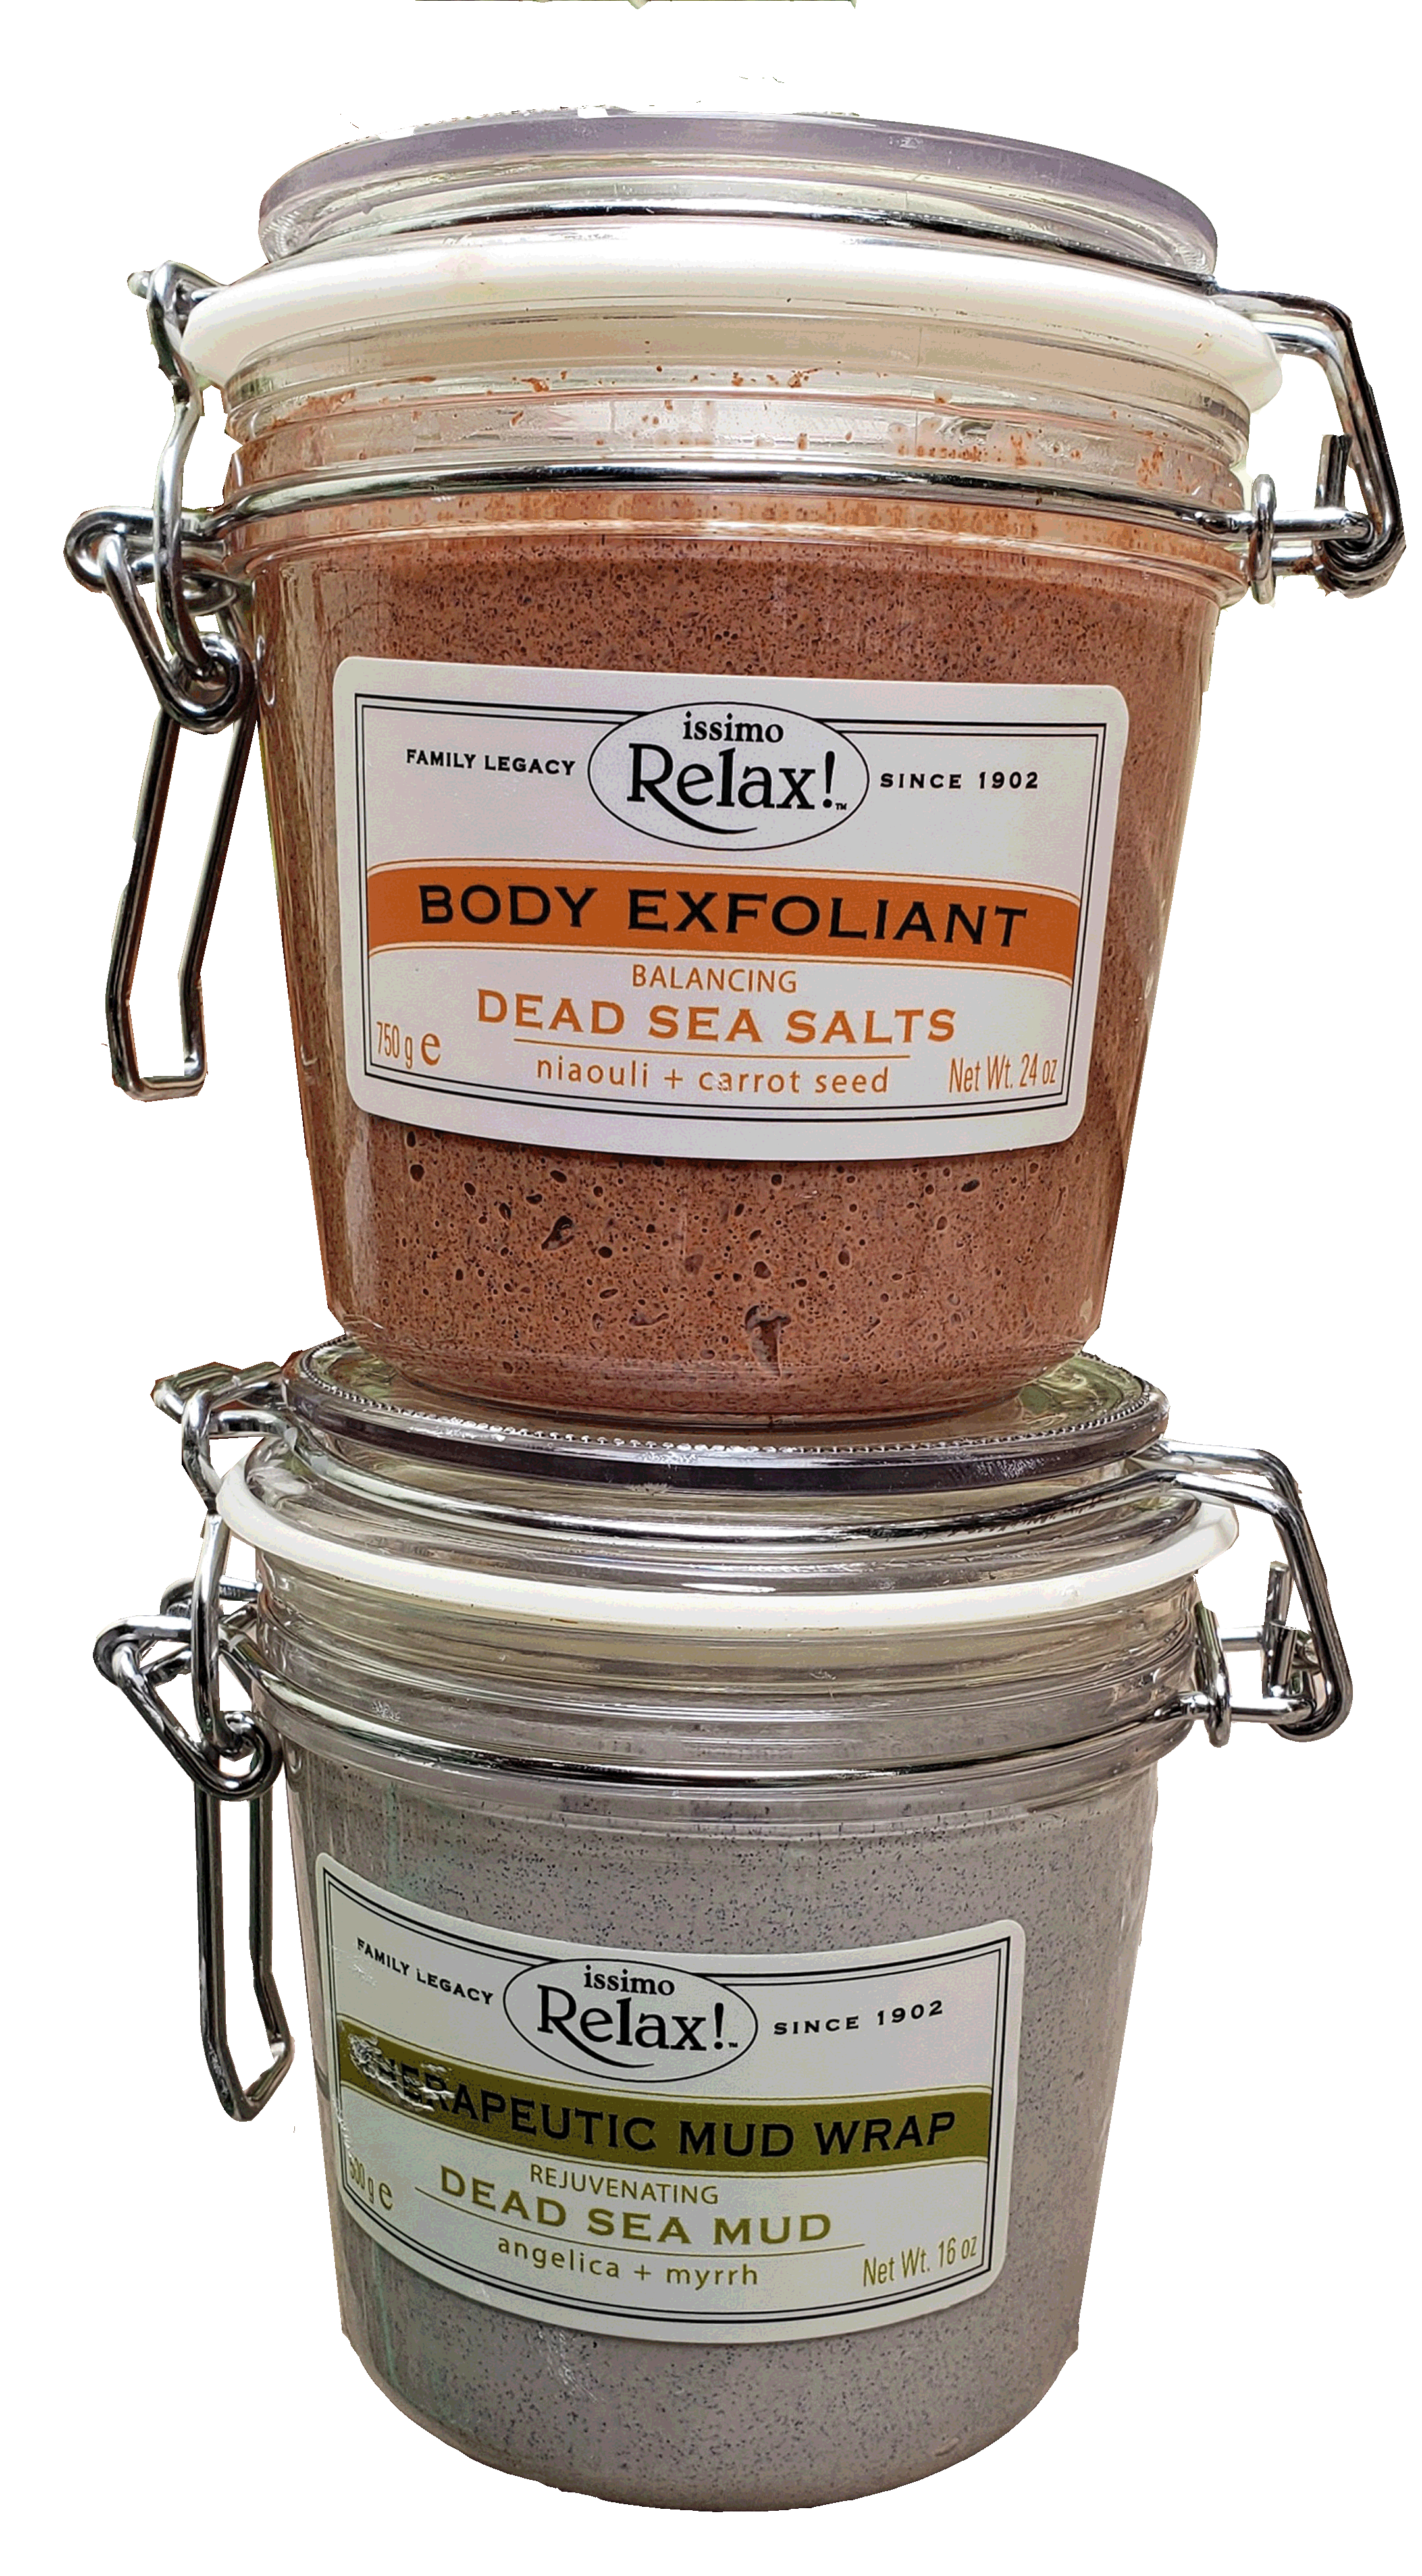 Dead Sea Salt and Dead Sea Salt Mud